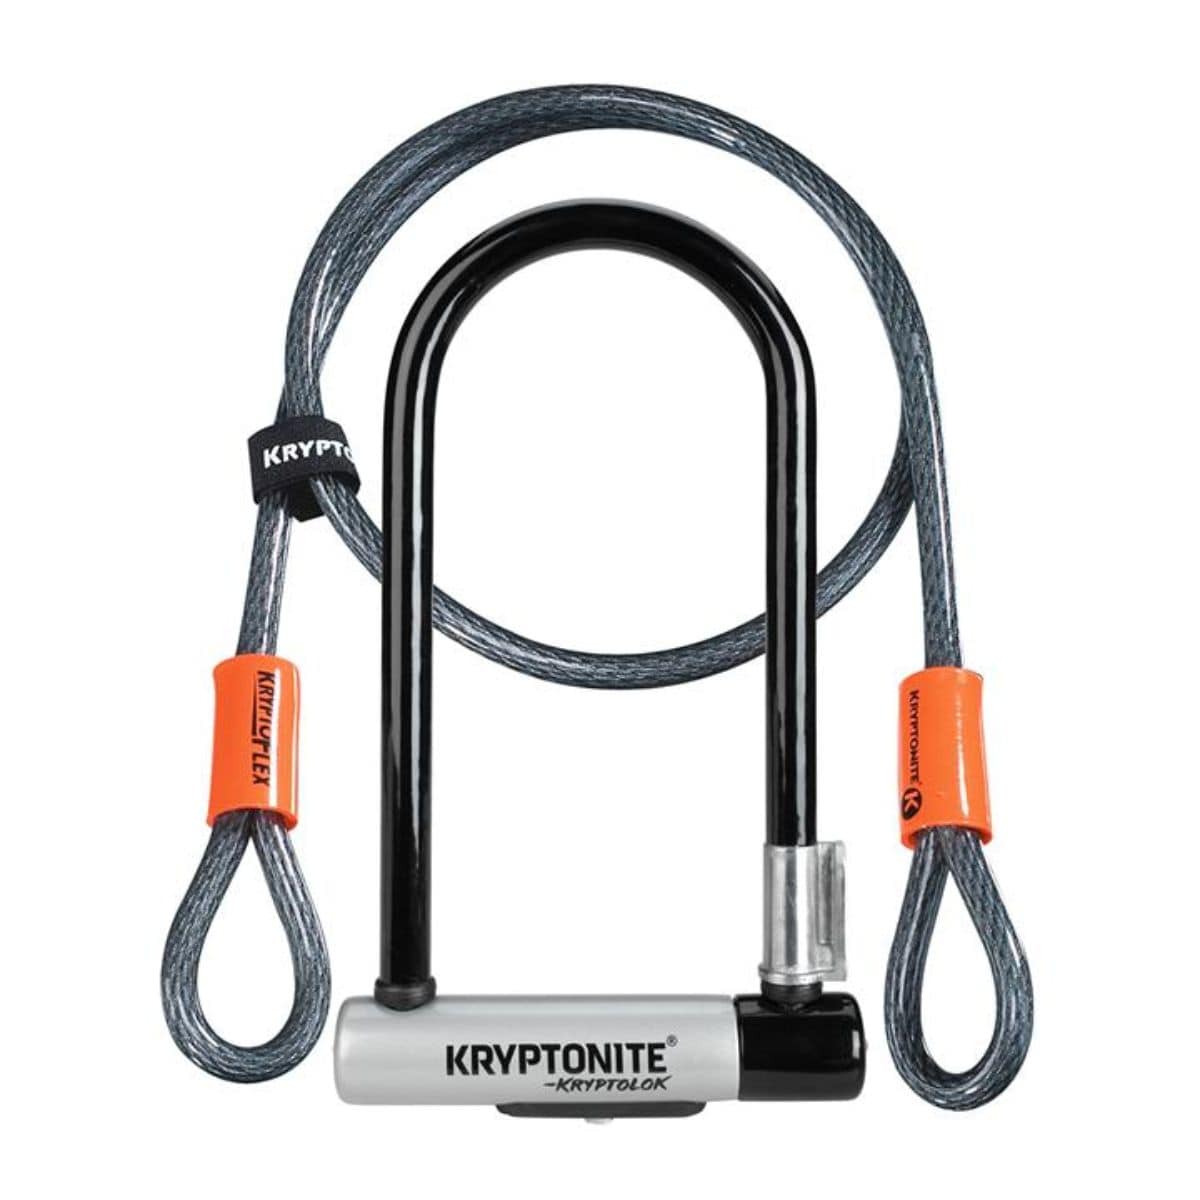 Kryptonite Kryptolok Standard U-Lock With 4 Foot Kryptoflex Cable